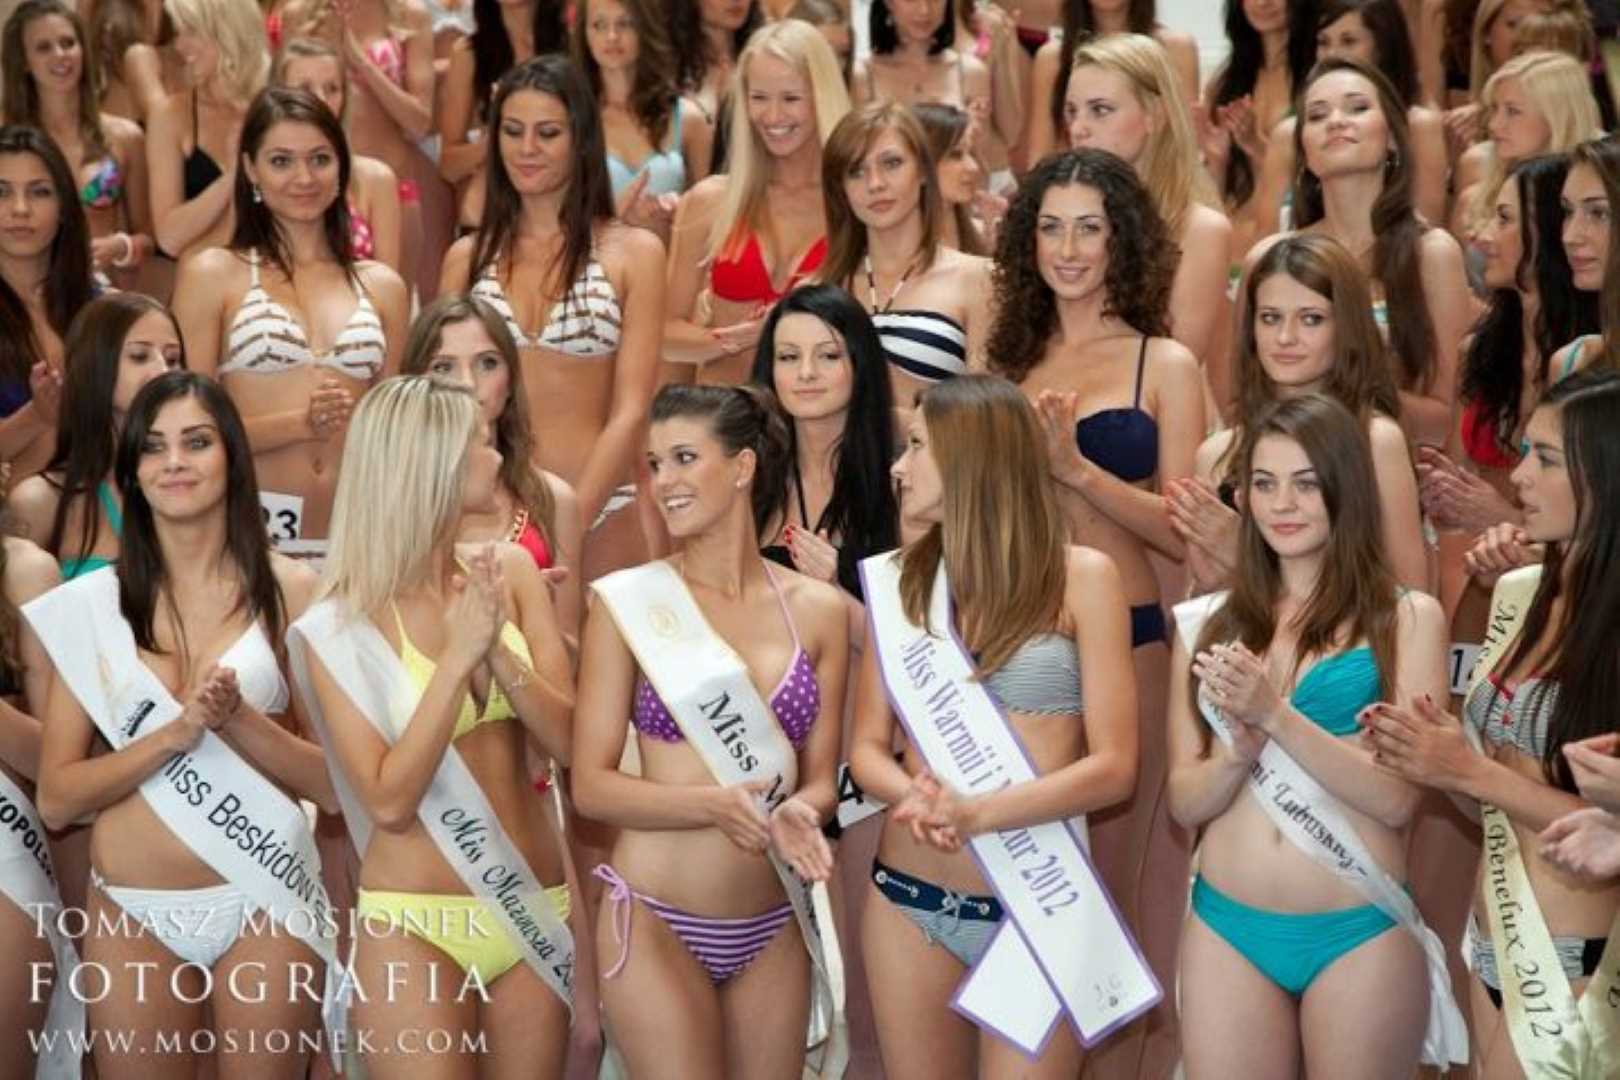 , Miss Warmii i Mazur 2012 w ćwierćfinale Miss Polski, Miss Warmii i Mazur